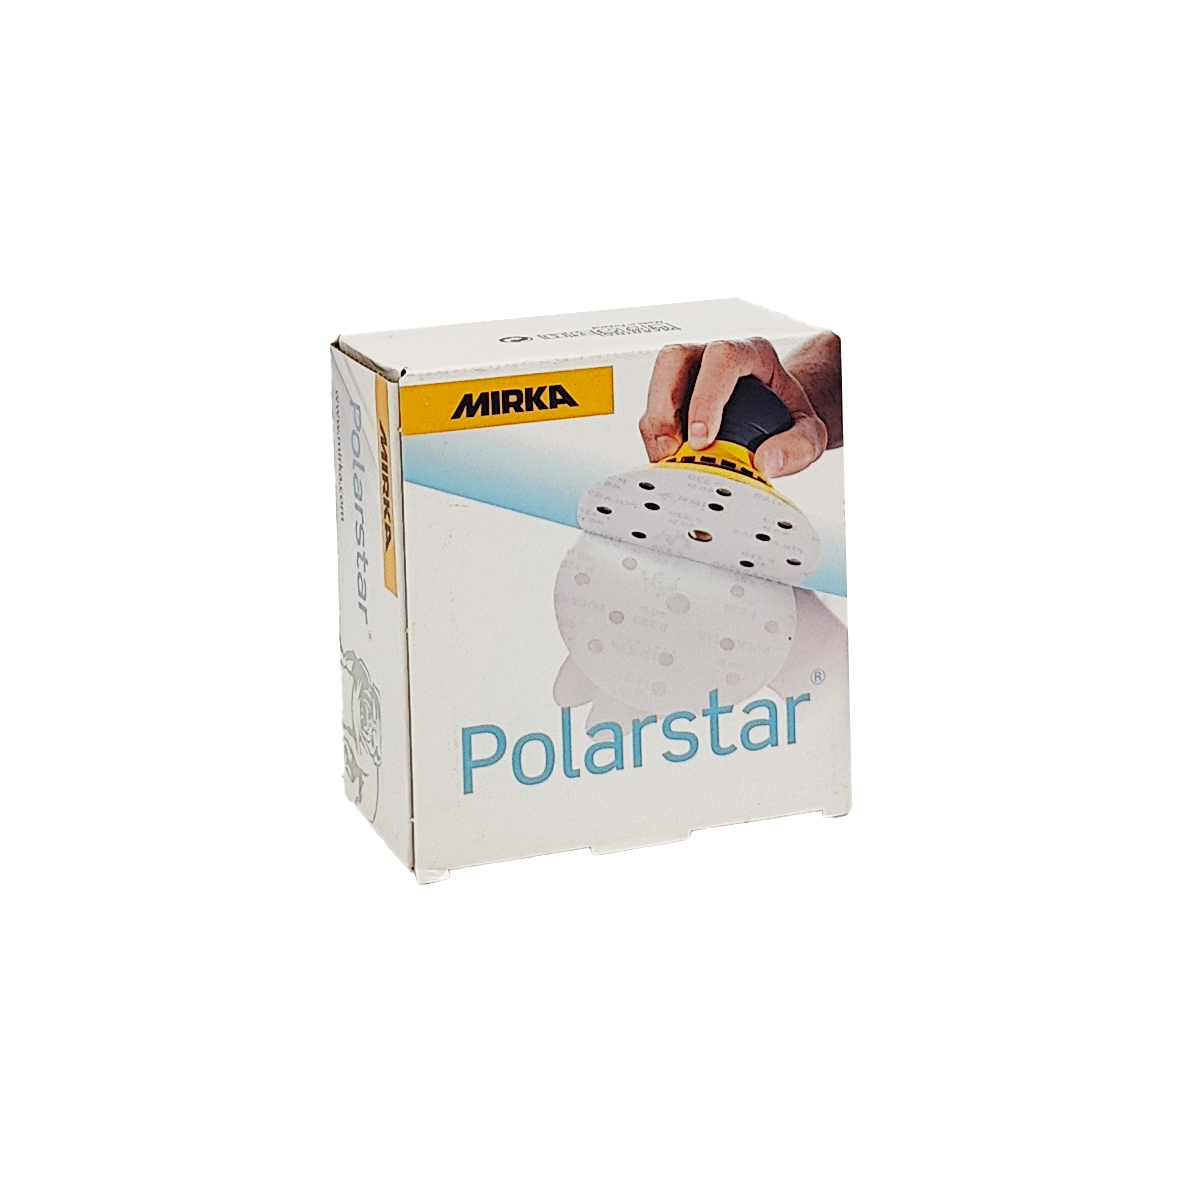 Abbildung Mirka Polarstar 77mm Verpackung.